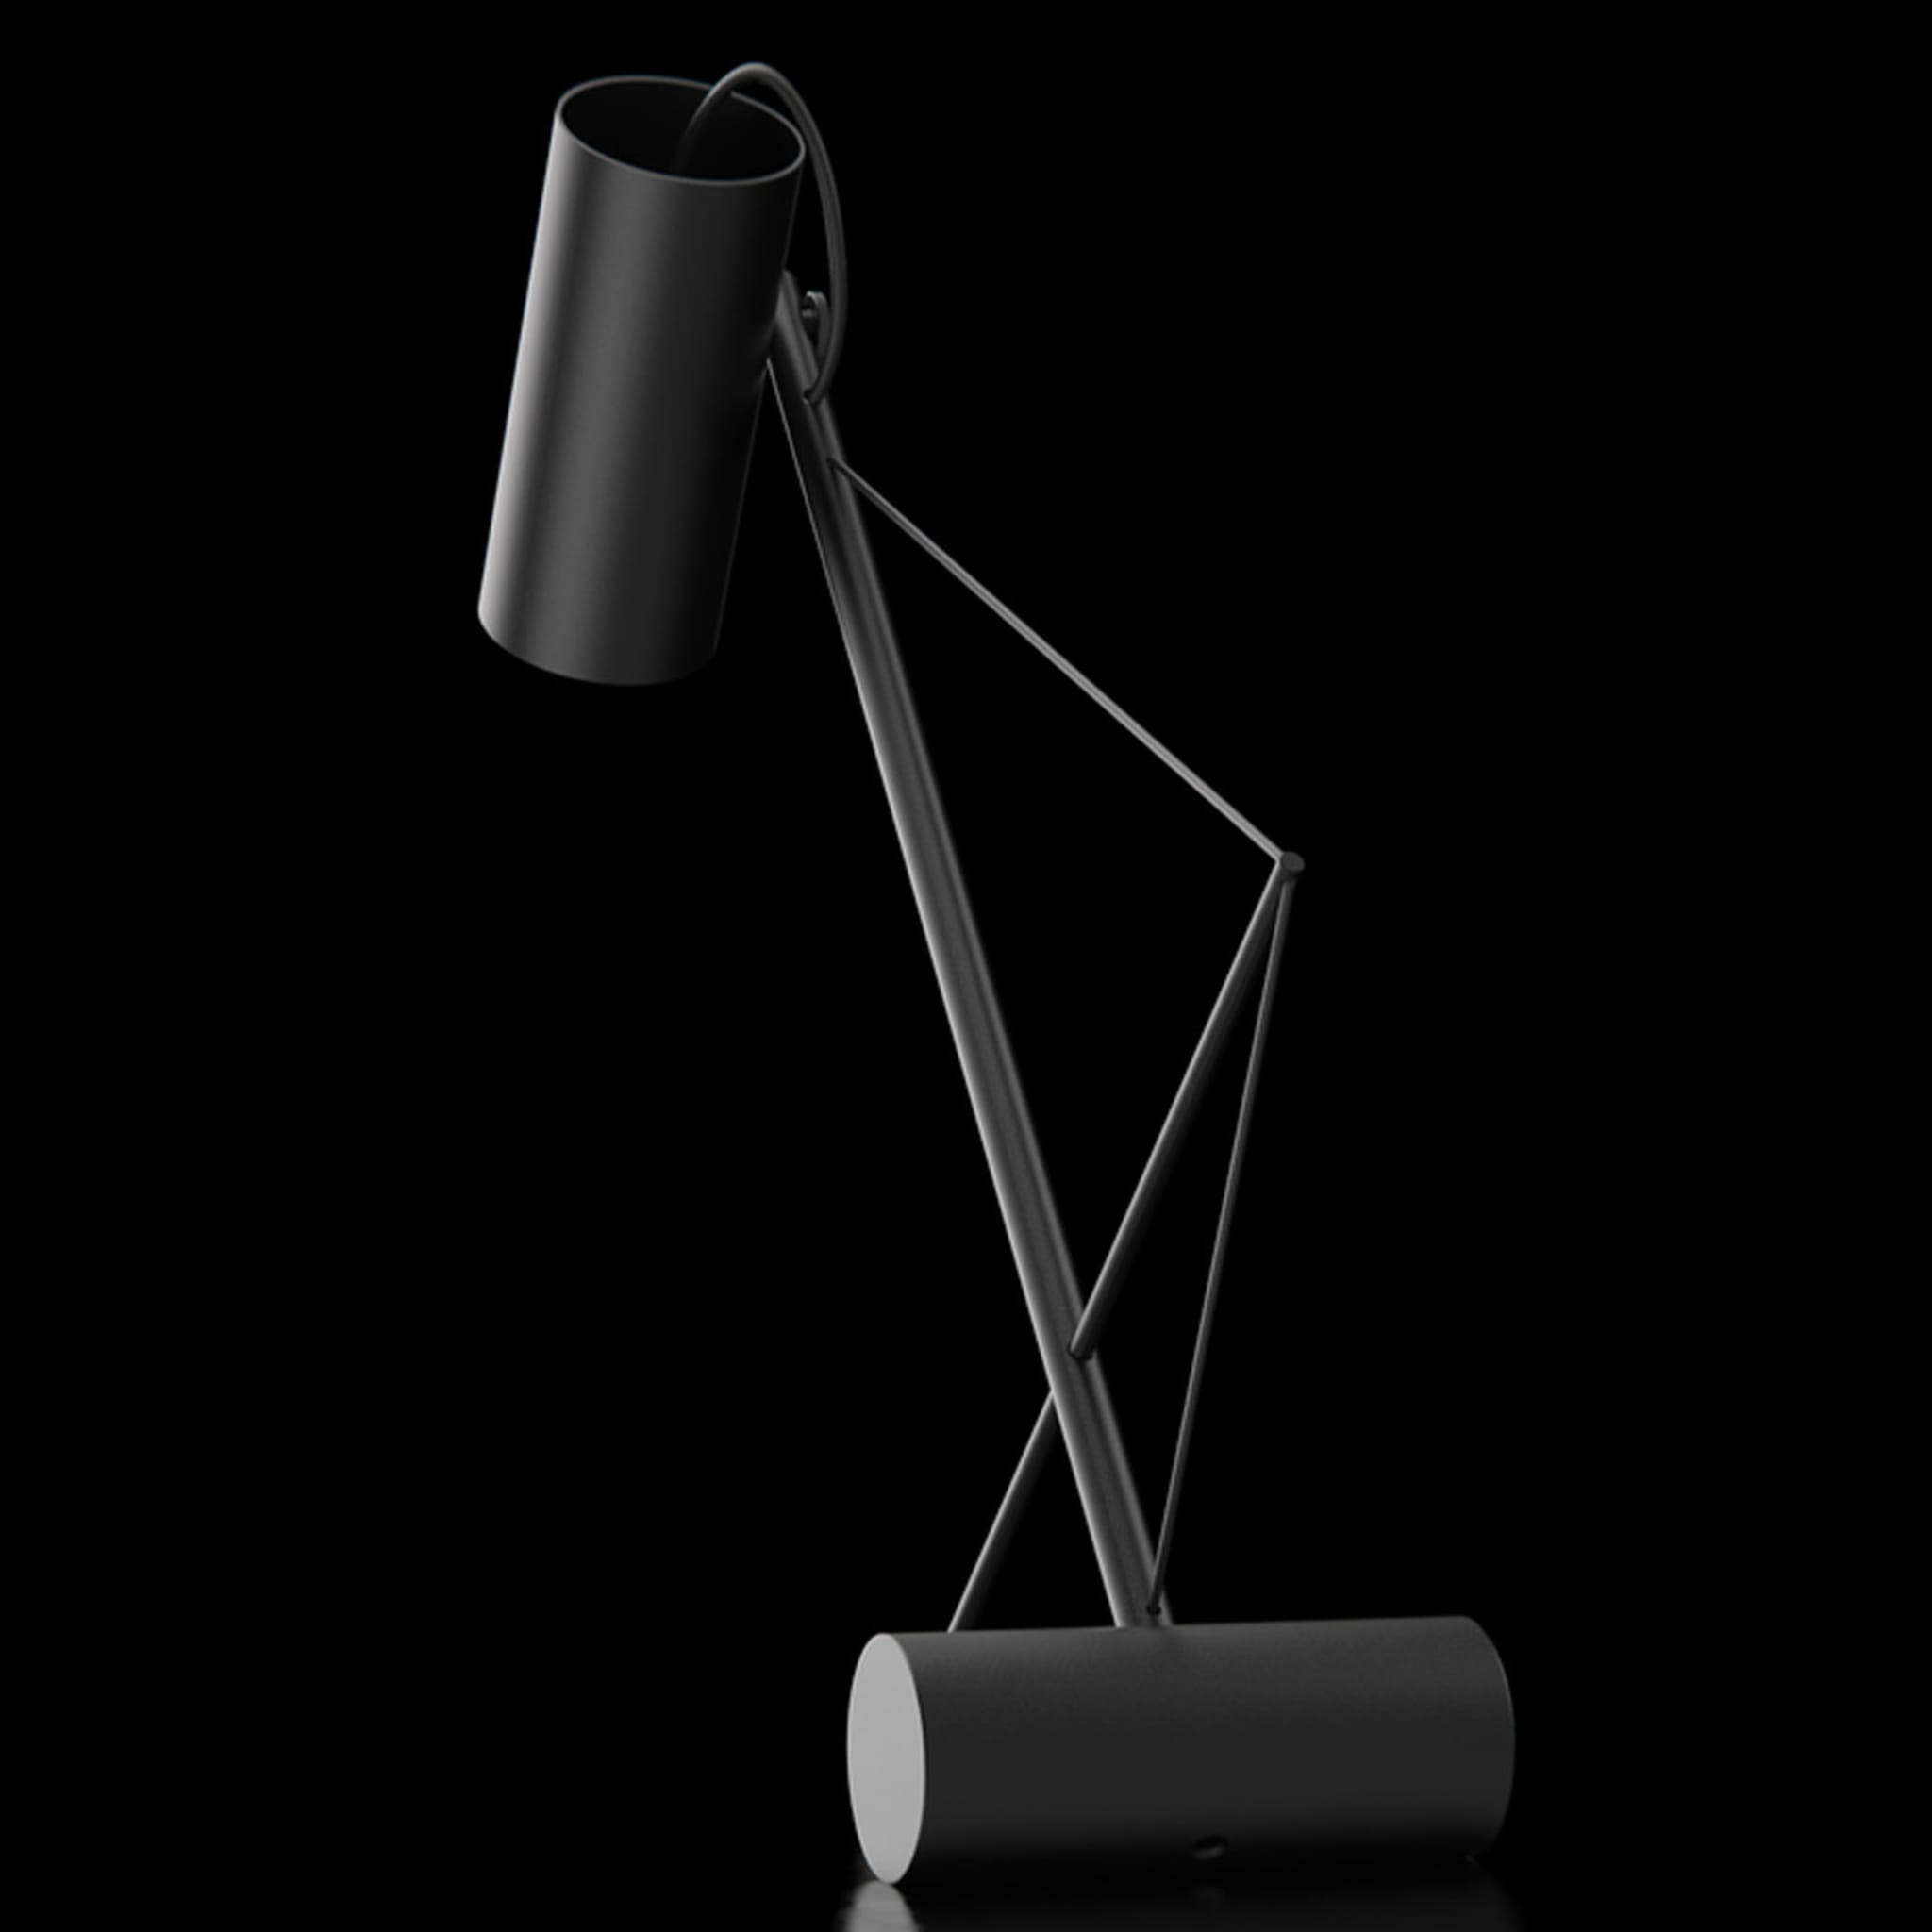 ED049 Black Desk Lamp - Alternative view 3